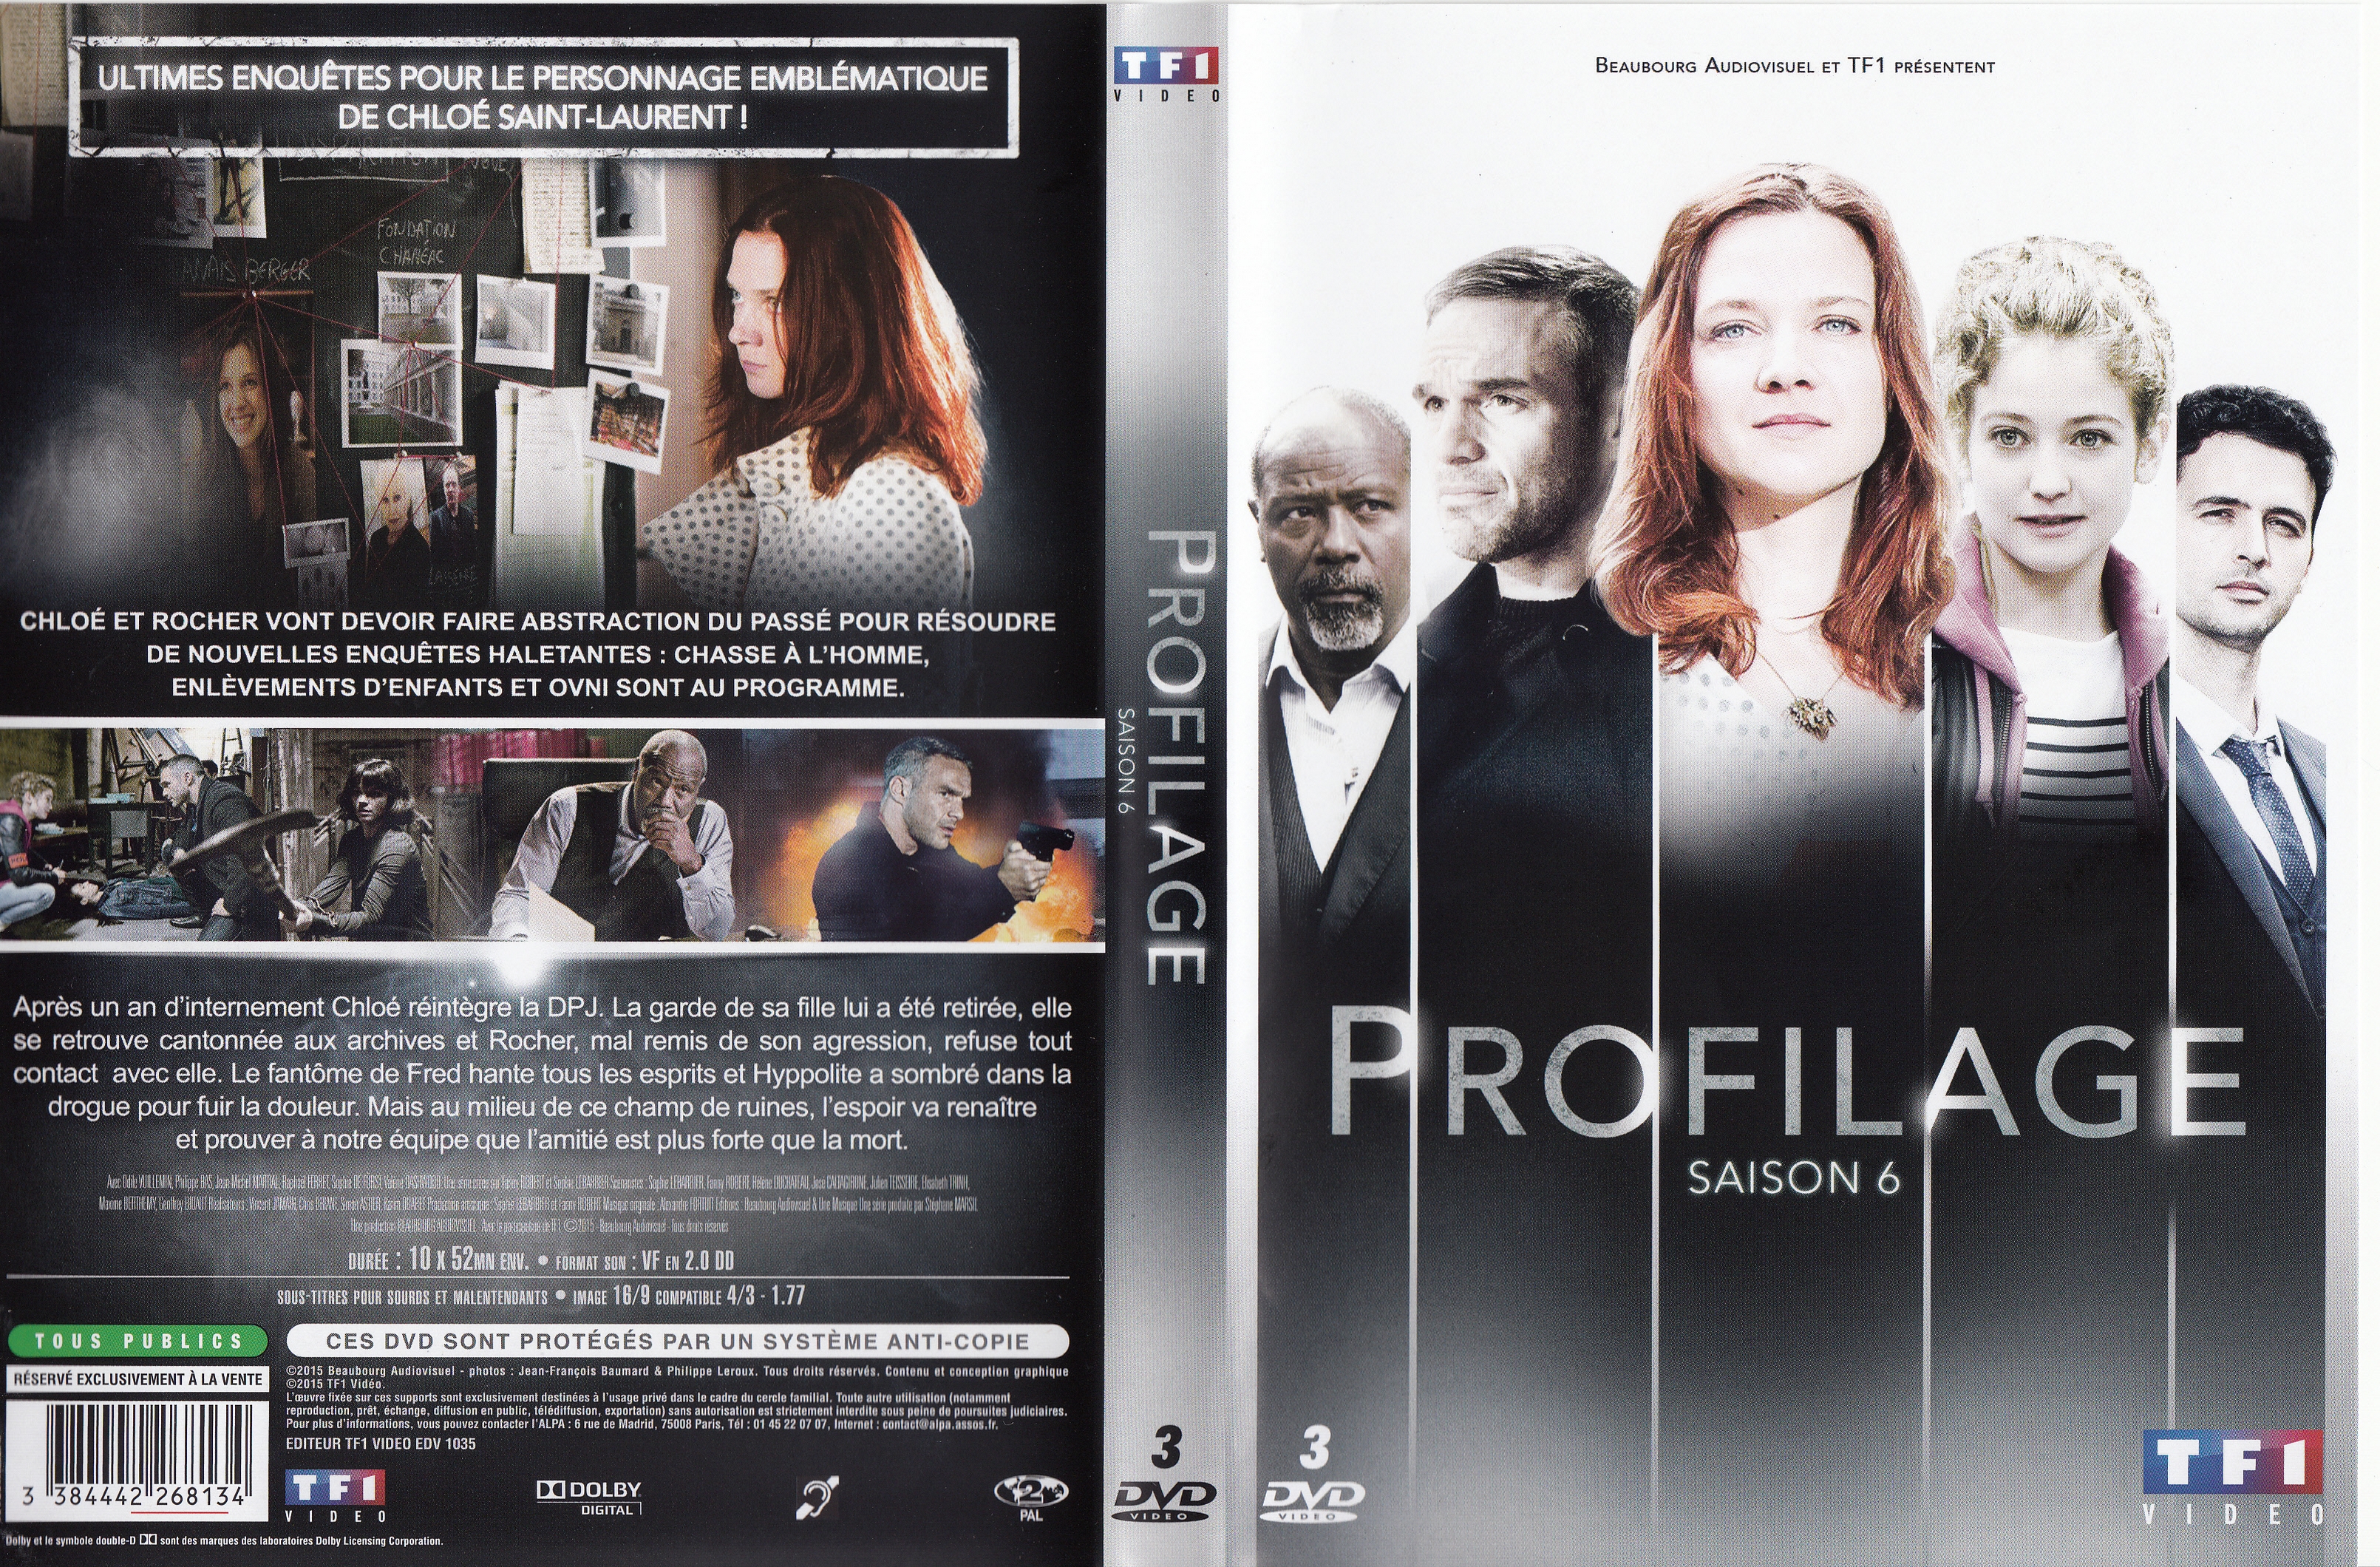 Jaquette DVD Profilage saison 6